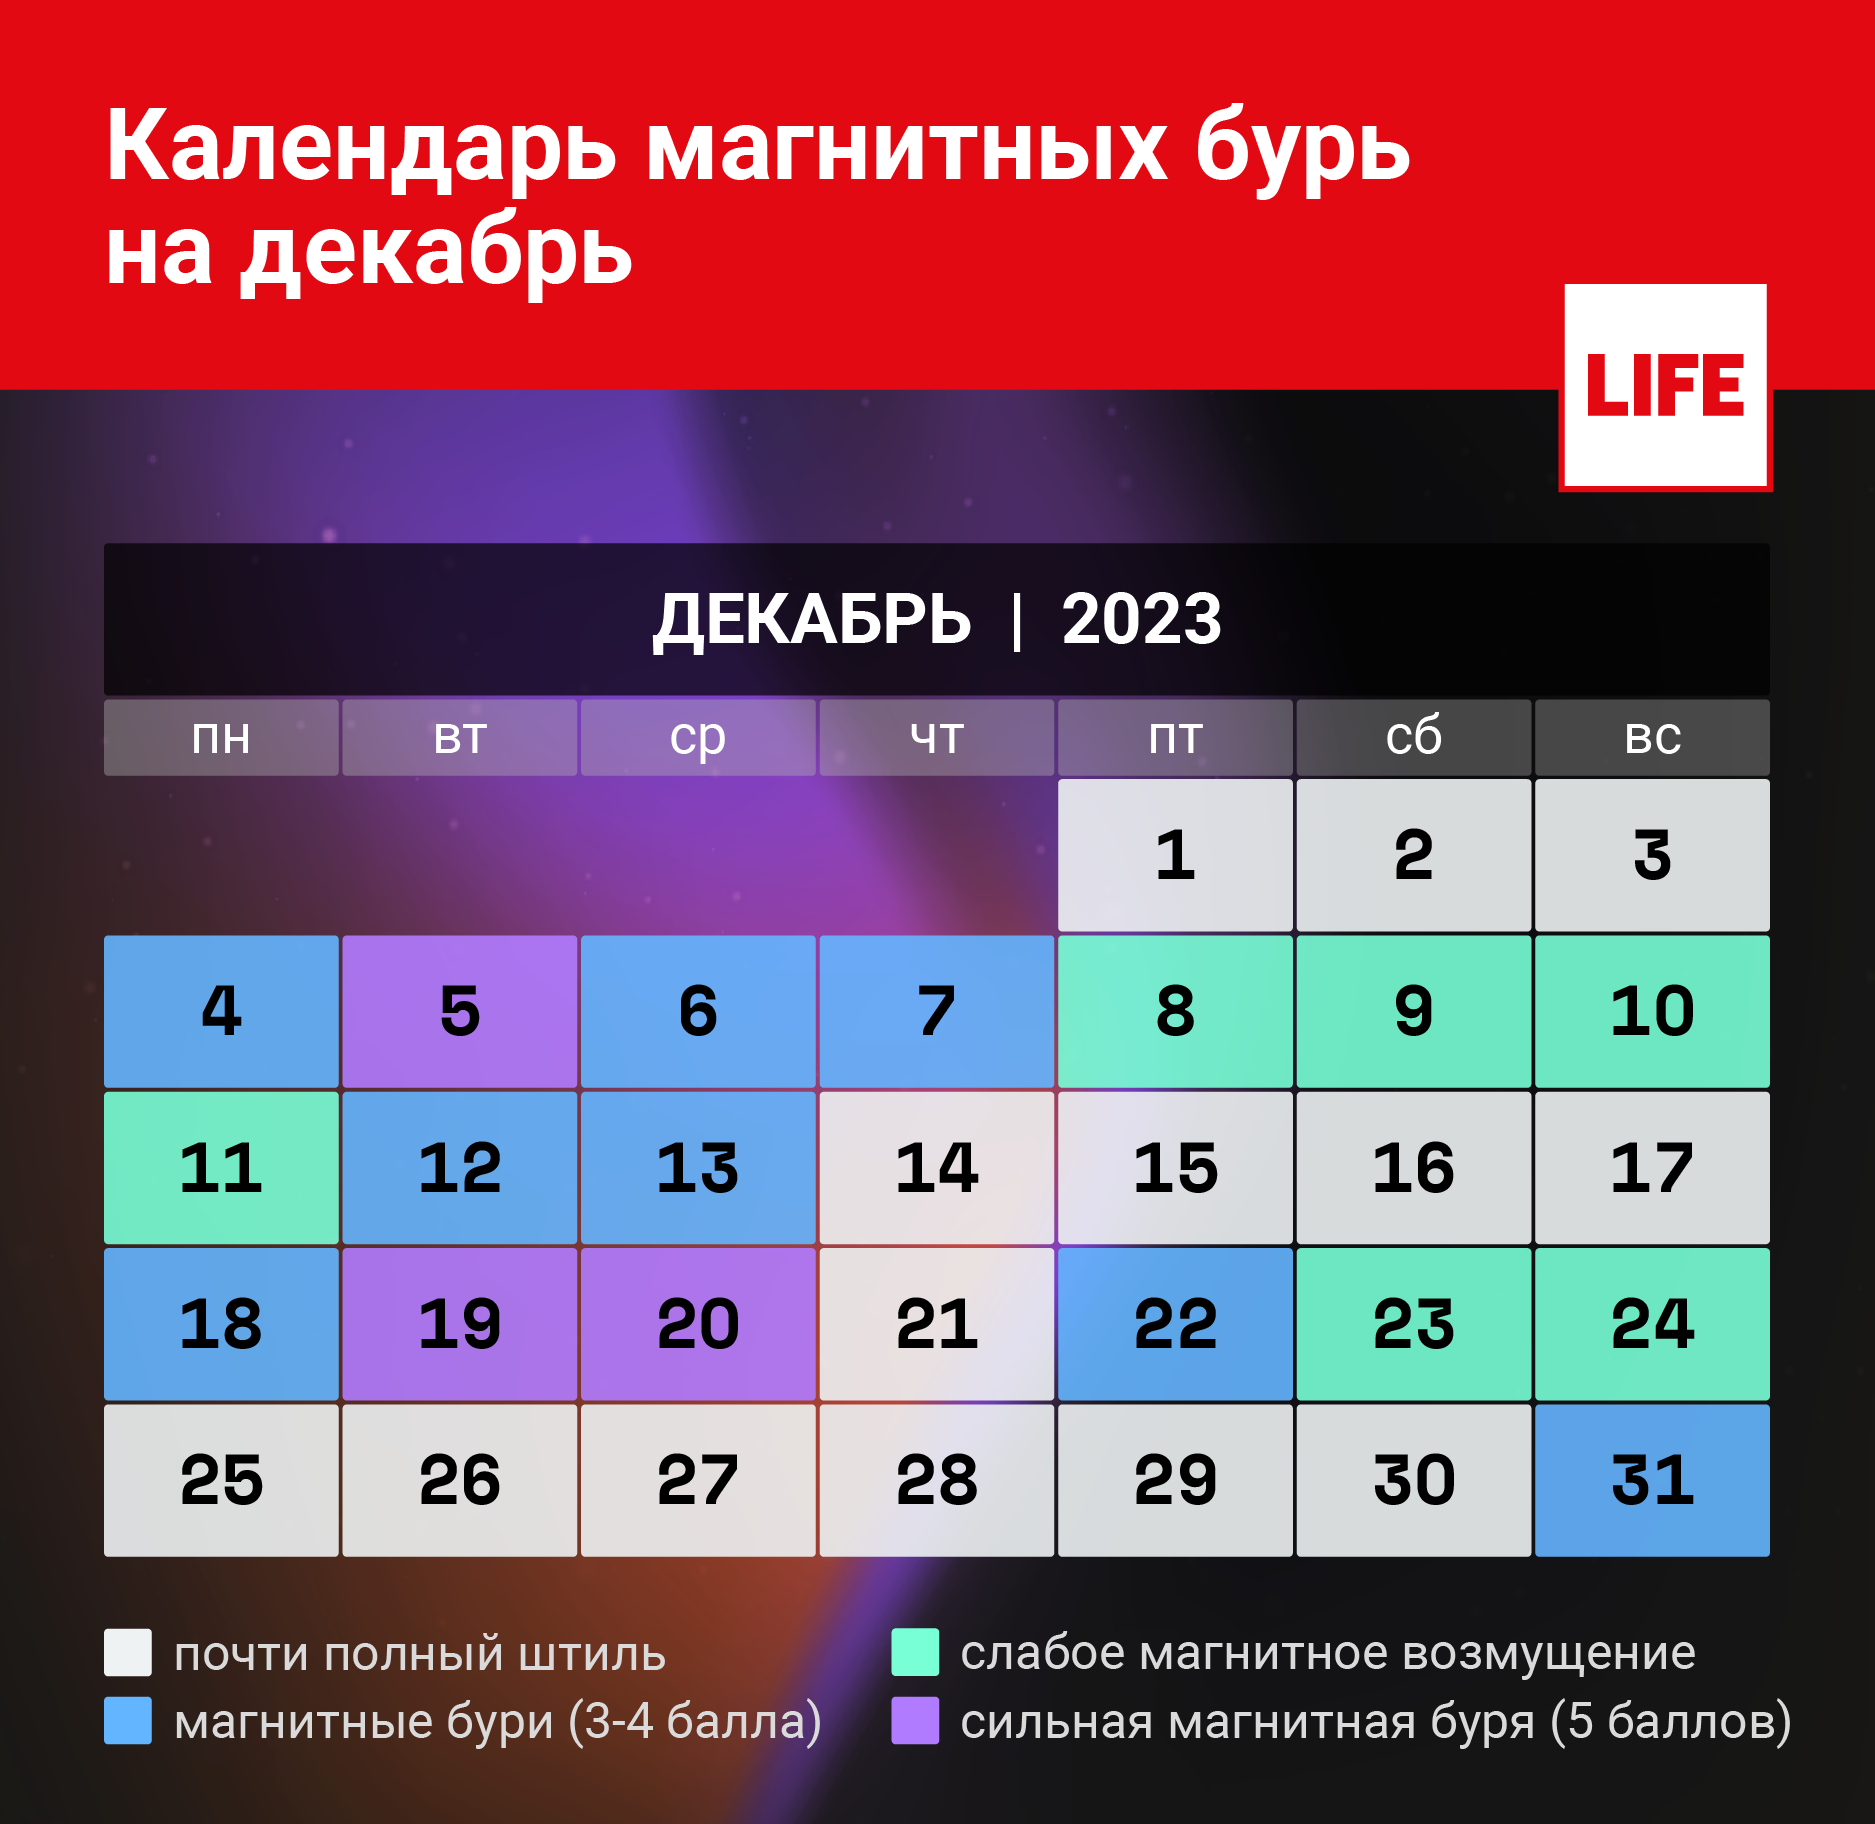 Календарь магнитных бурь на декабрь 2023